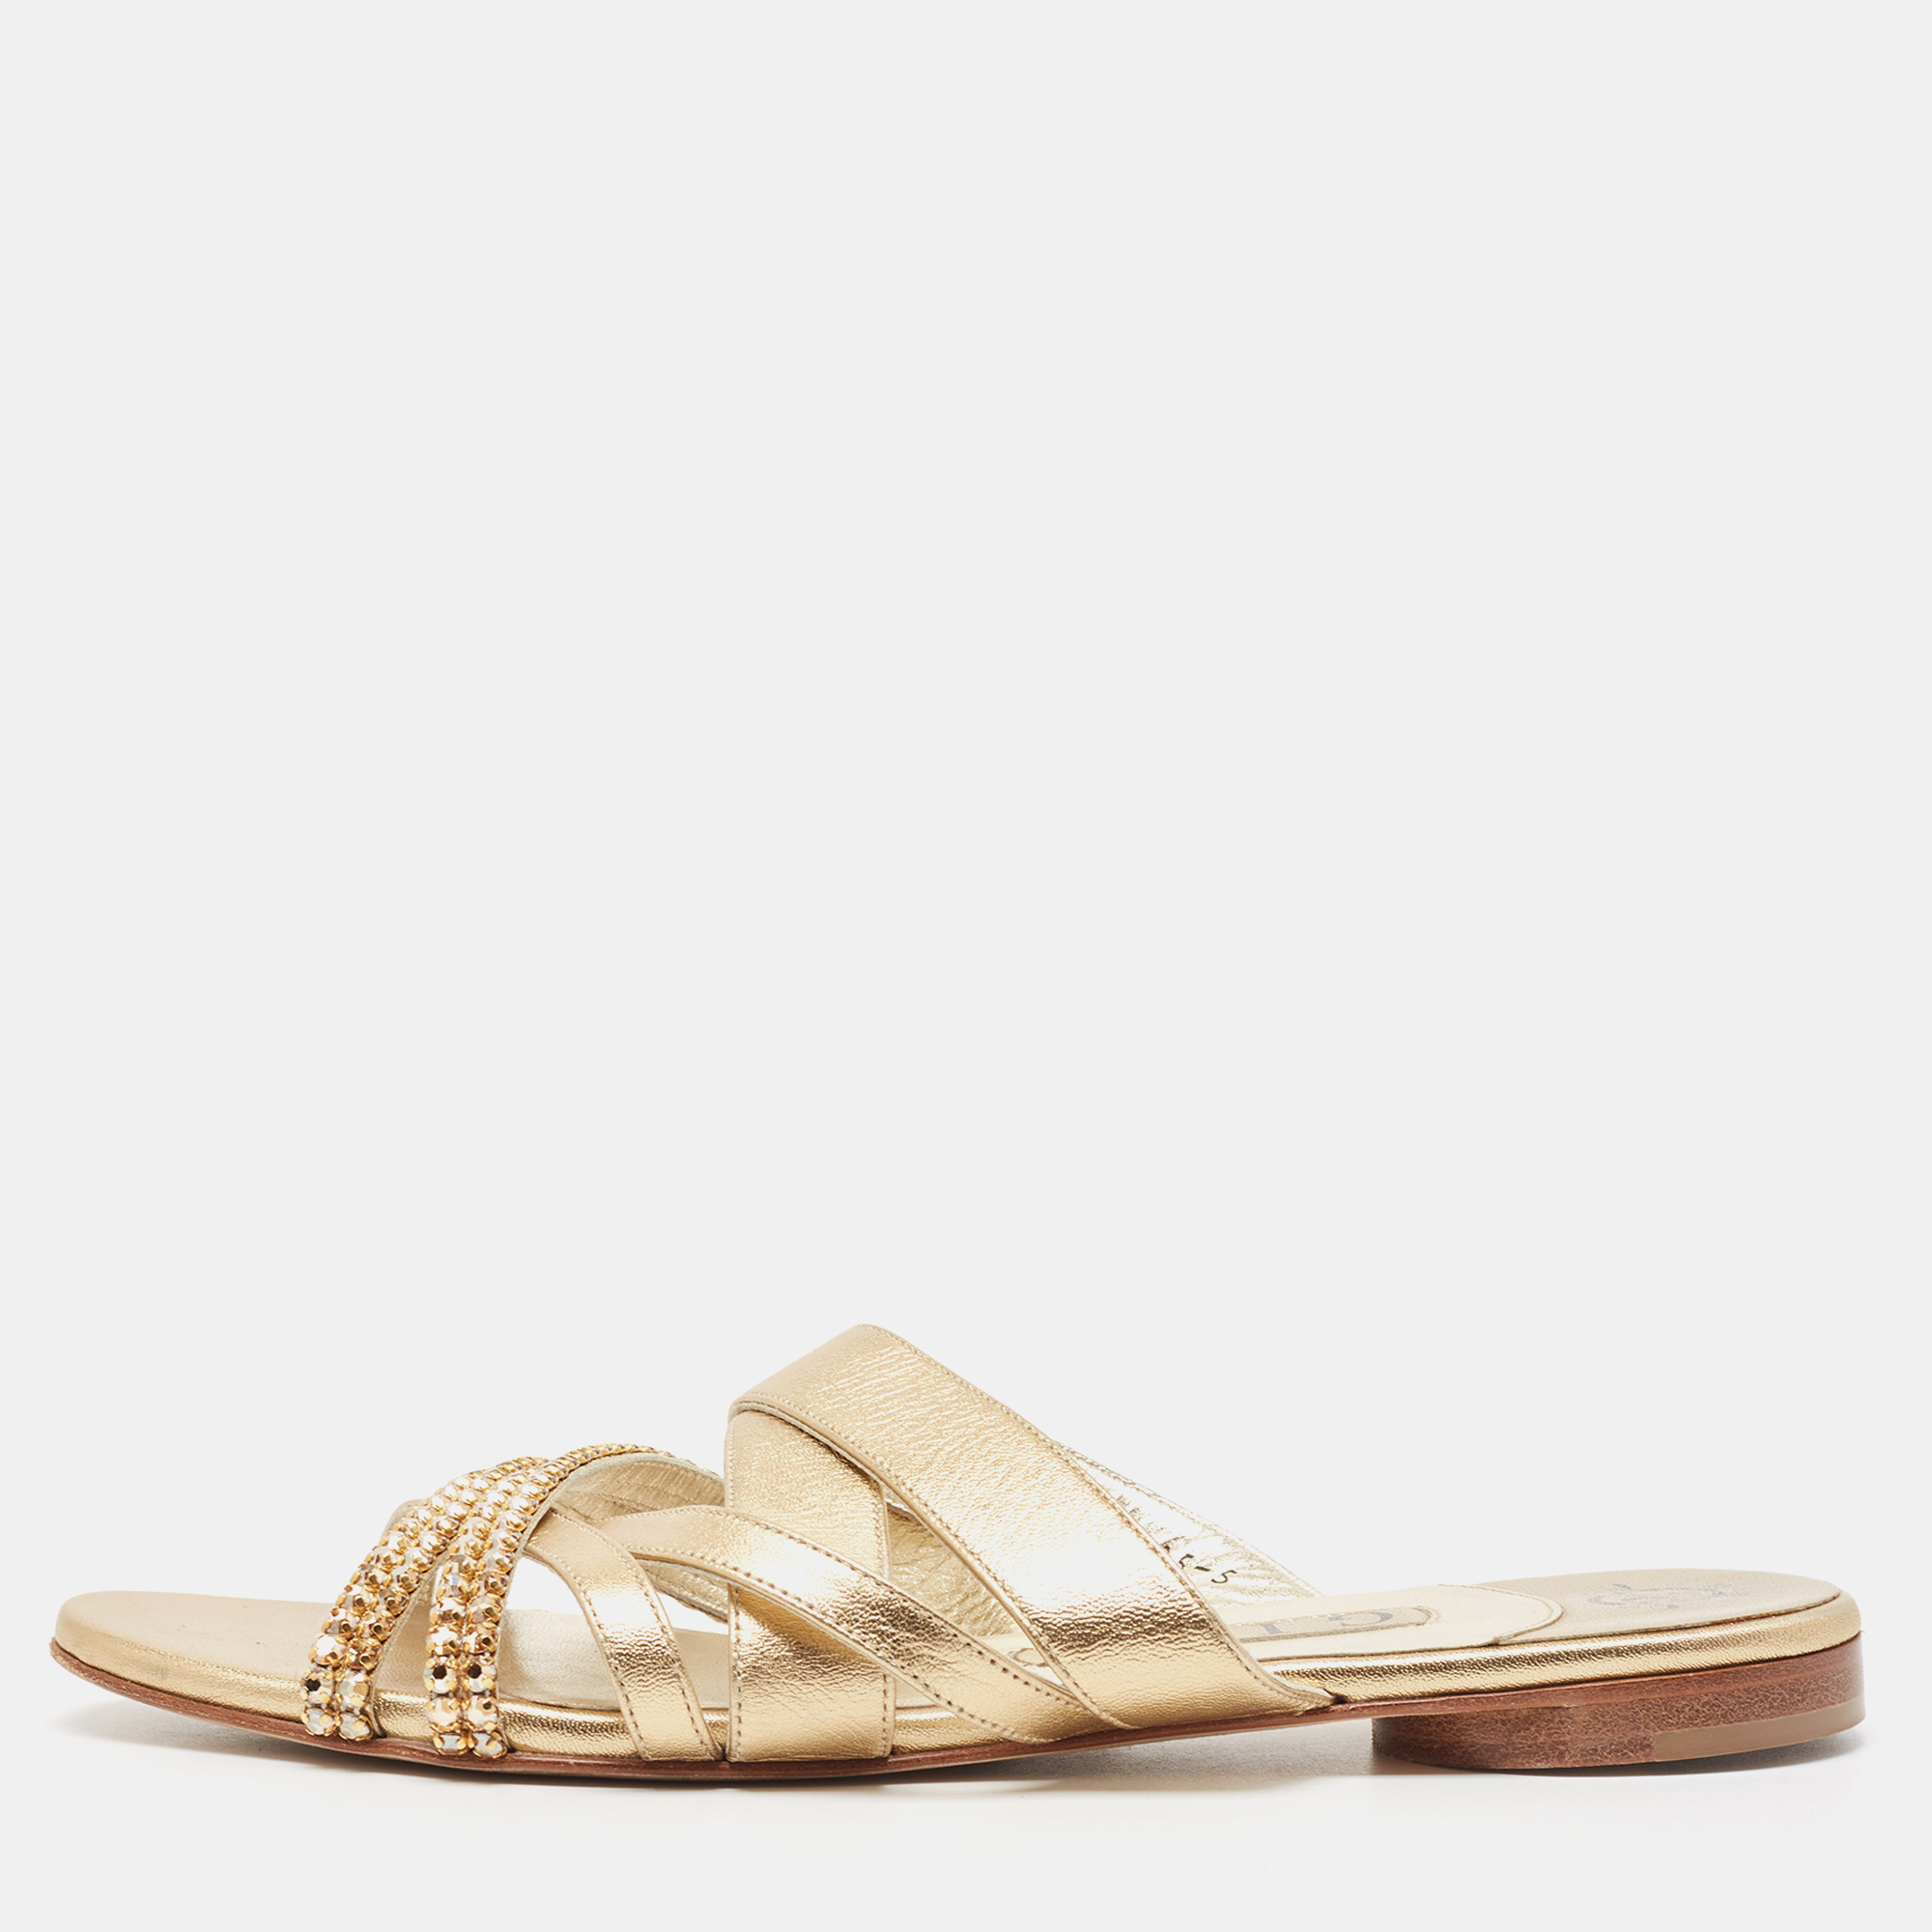 Gina golden leather crystal embellished slide sandals size 38